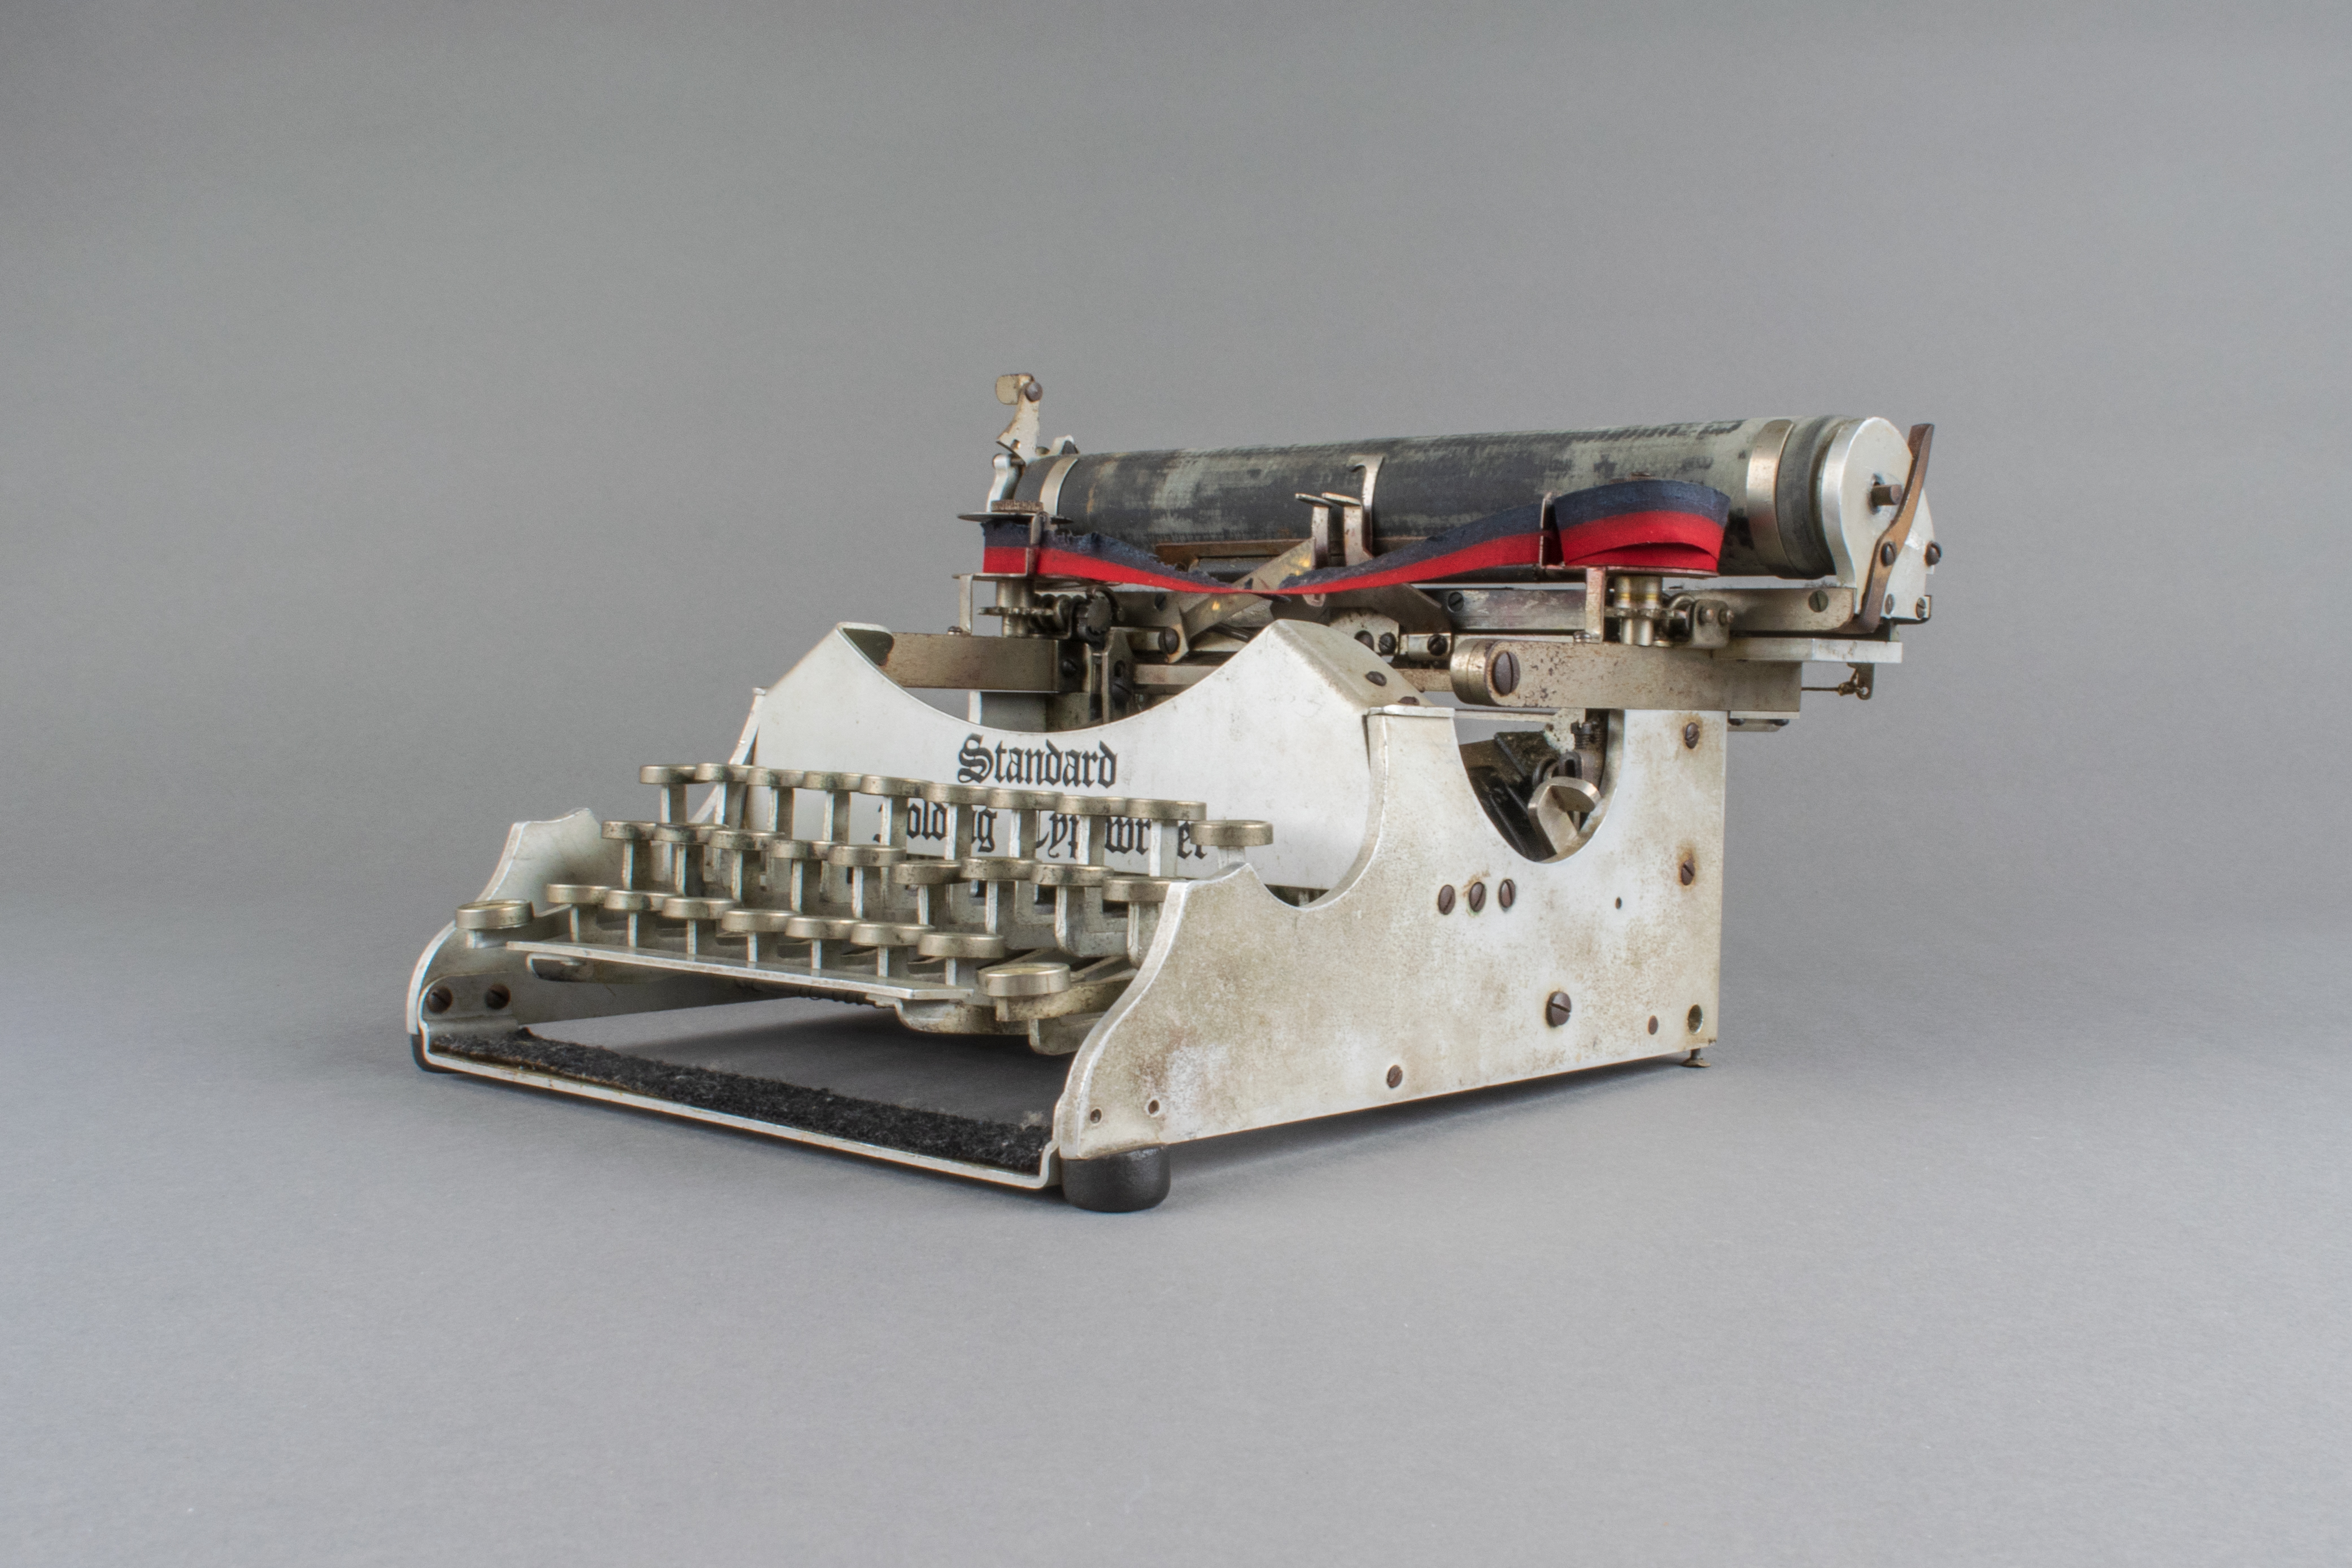 La machine à écrire – Ville de Lausanne